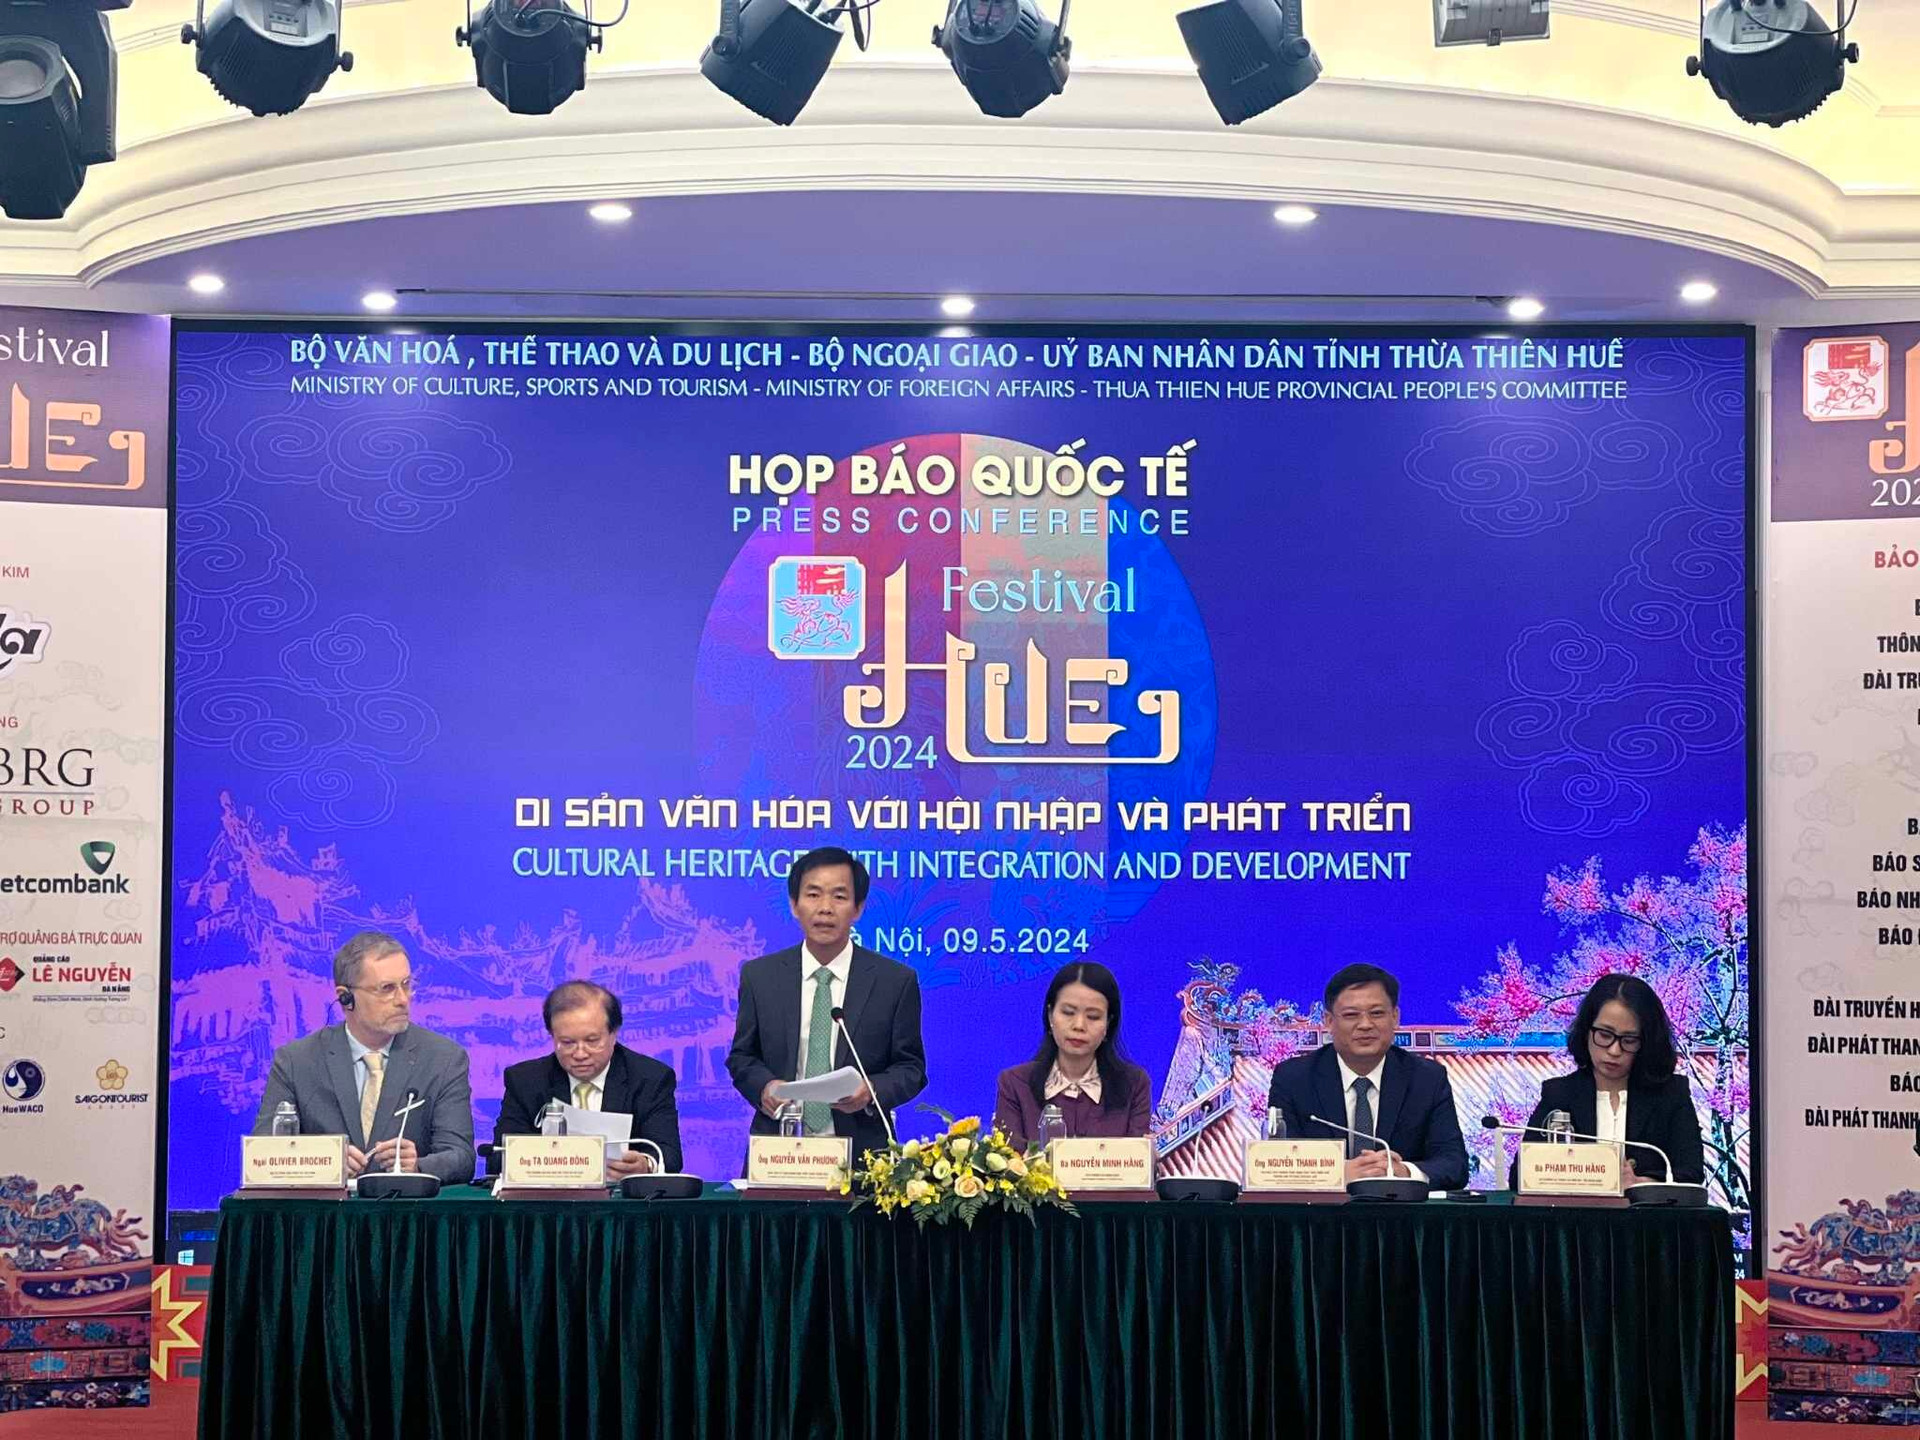 Chủ tịch UBND tỉnh Thừa Thiên Huế Nguyễn Văn Phương thông tin về Festival Huế 2024.